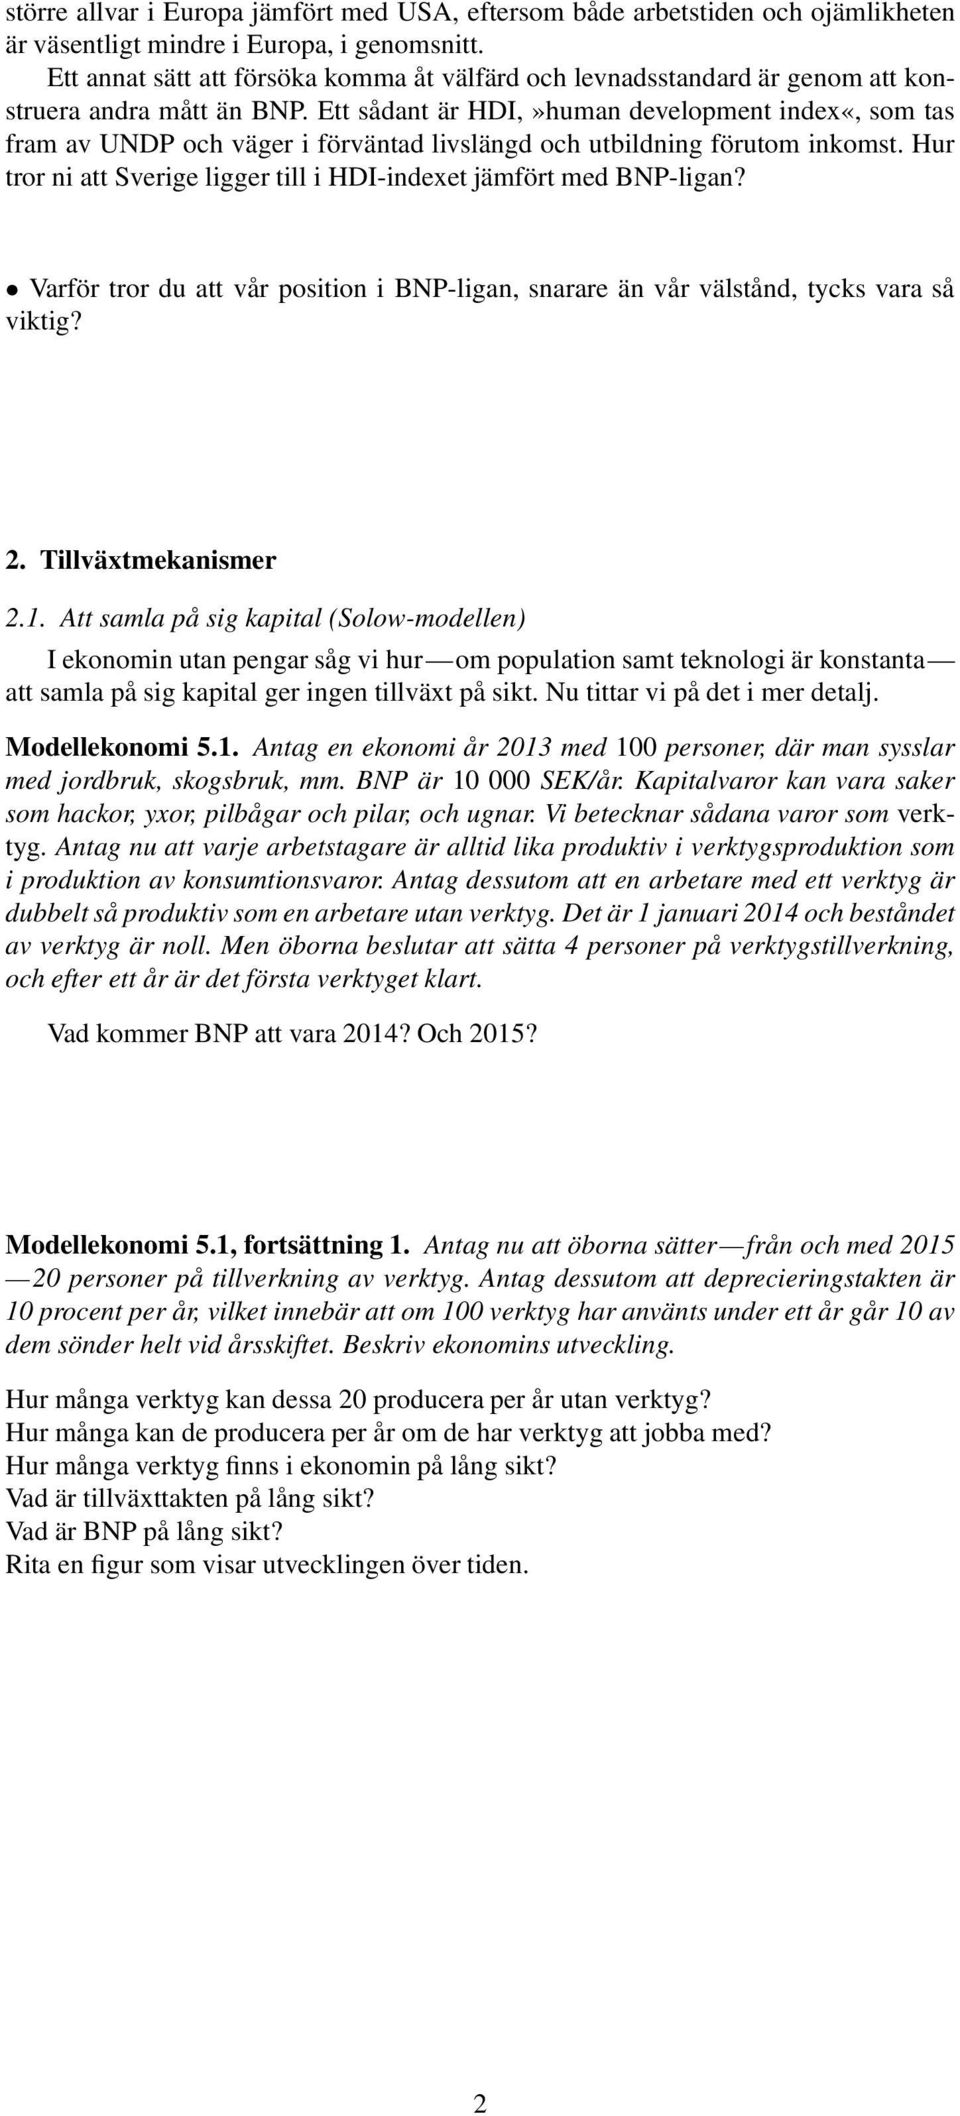 Ett sådant är HDI,»human development inde«, som tas fram av UNDP och väger i förväntad livslängd och utbildning förutom inkomst. Hur tror ni att Sverige ligger till i HDI-indeet jämfört med BNP-ligan?